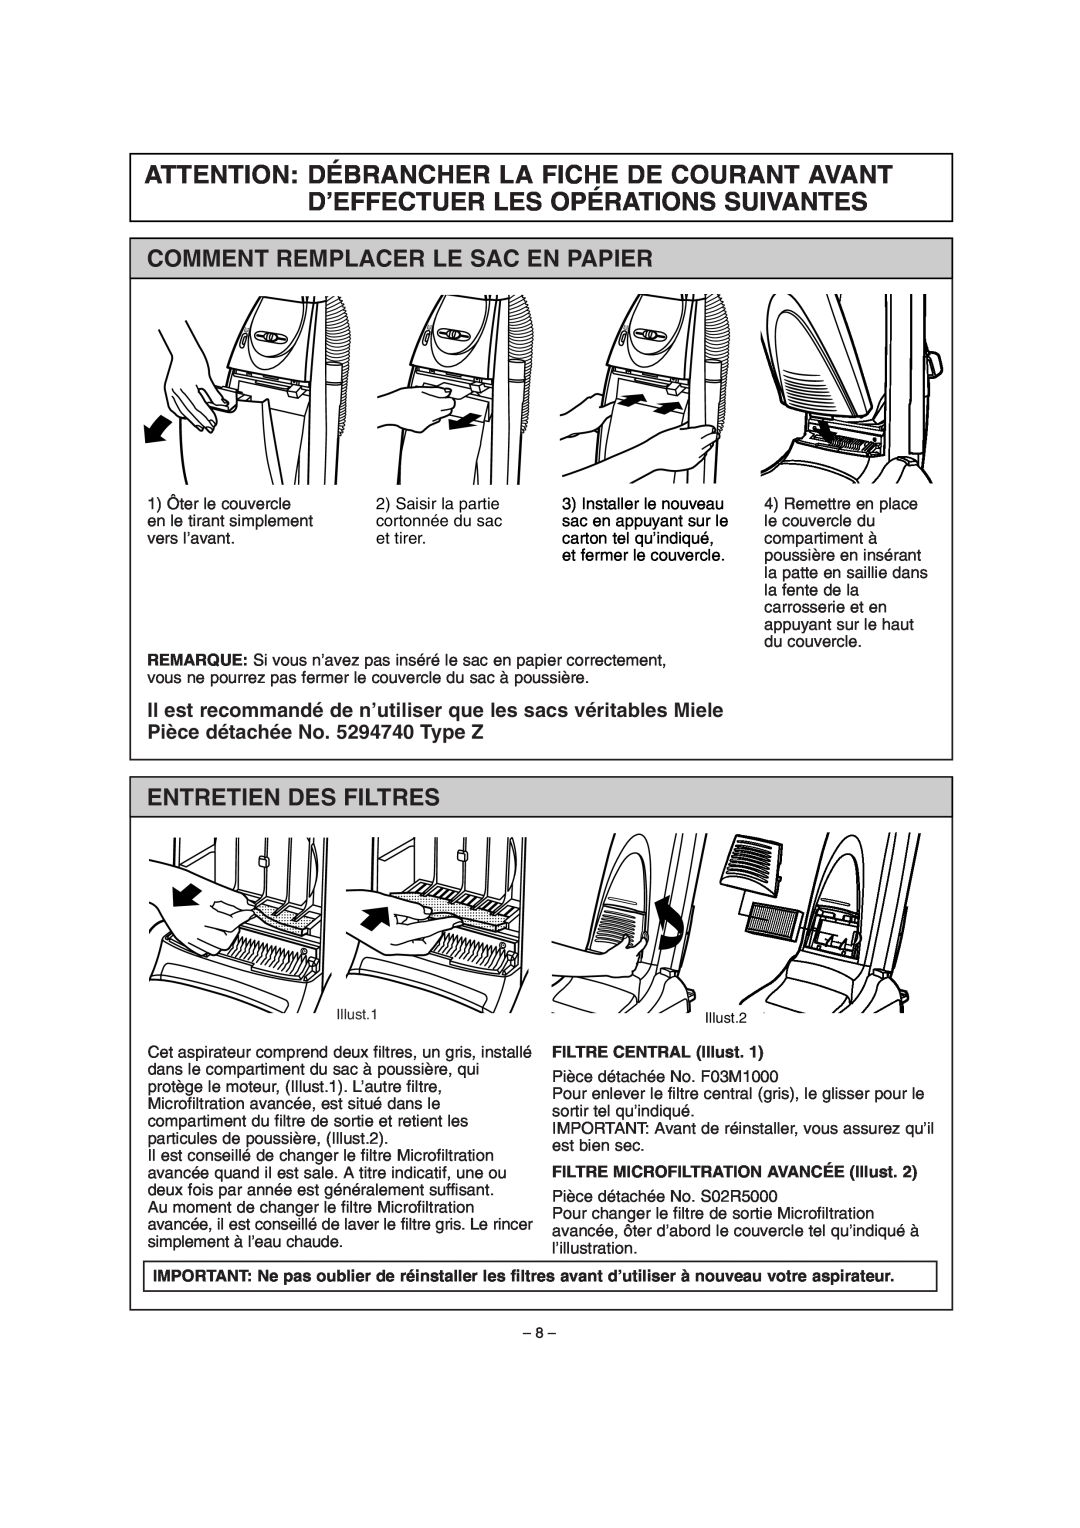 Miele S179i important safety instructions Comment Remplacer Le Sac En Papier, Entretien Des Filtres, FILTRE CENTRAL Illust 